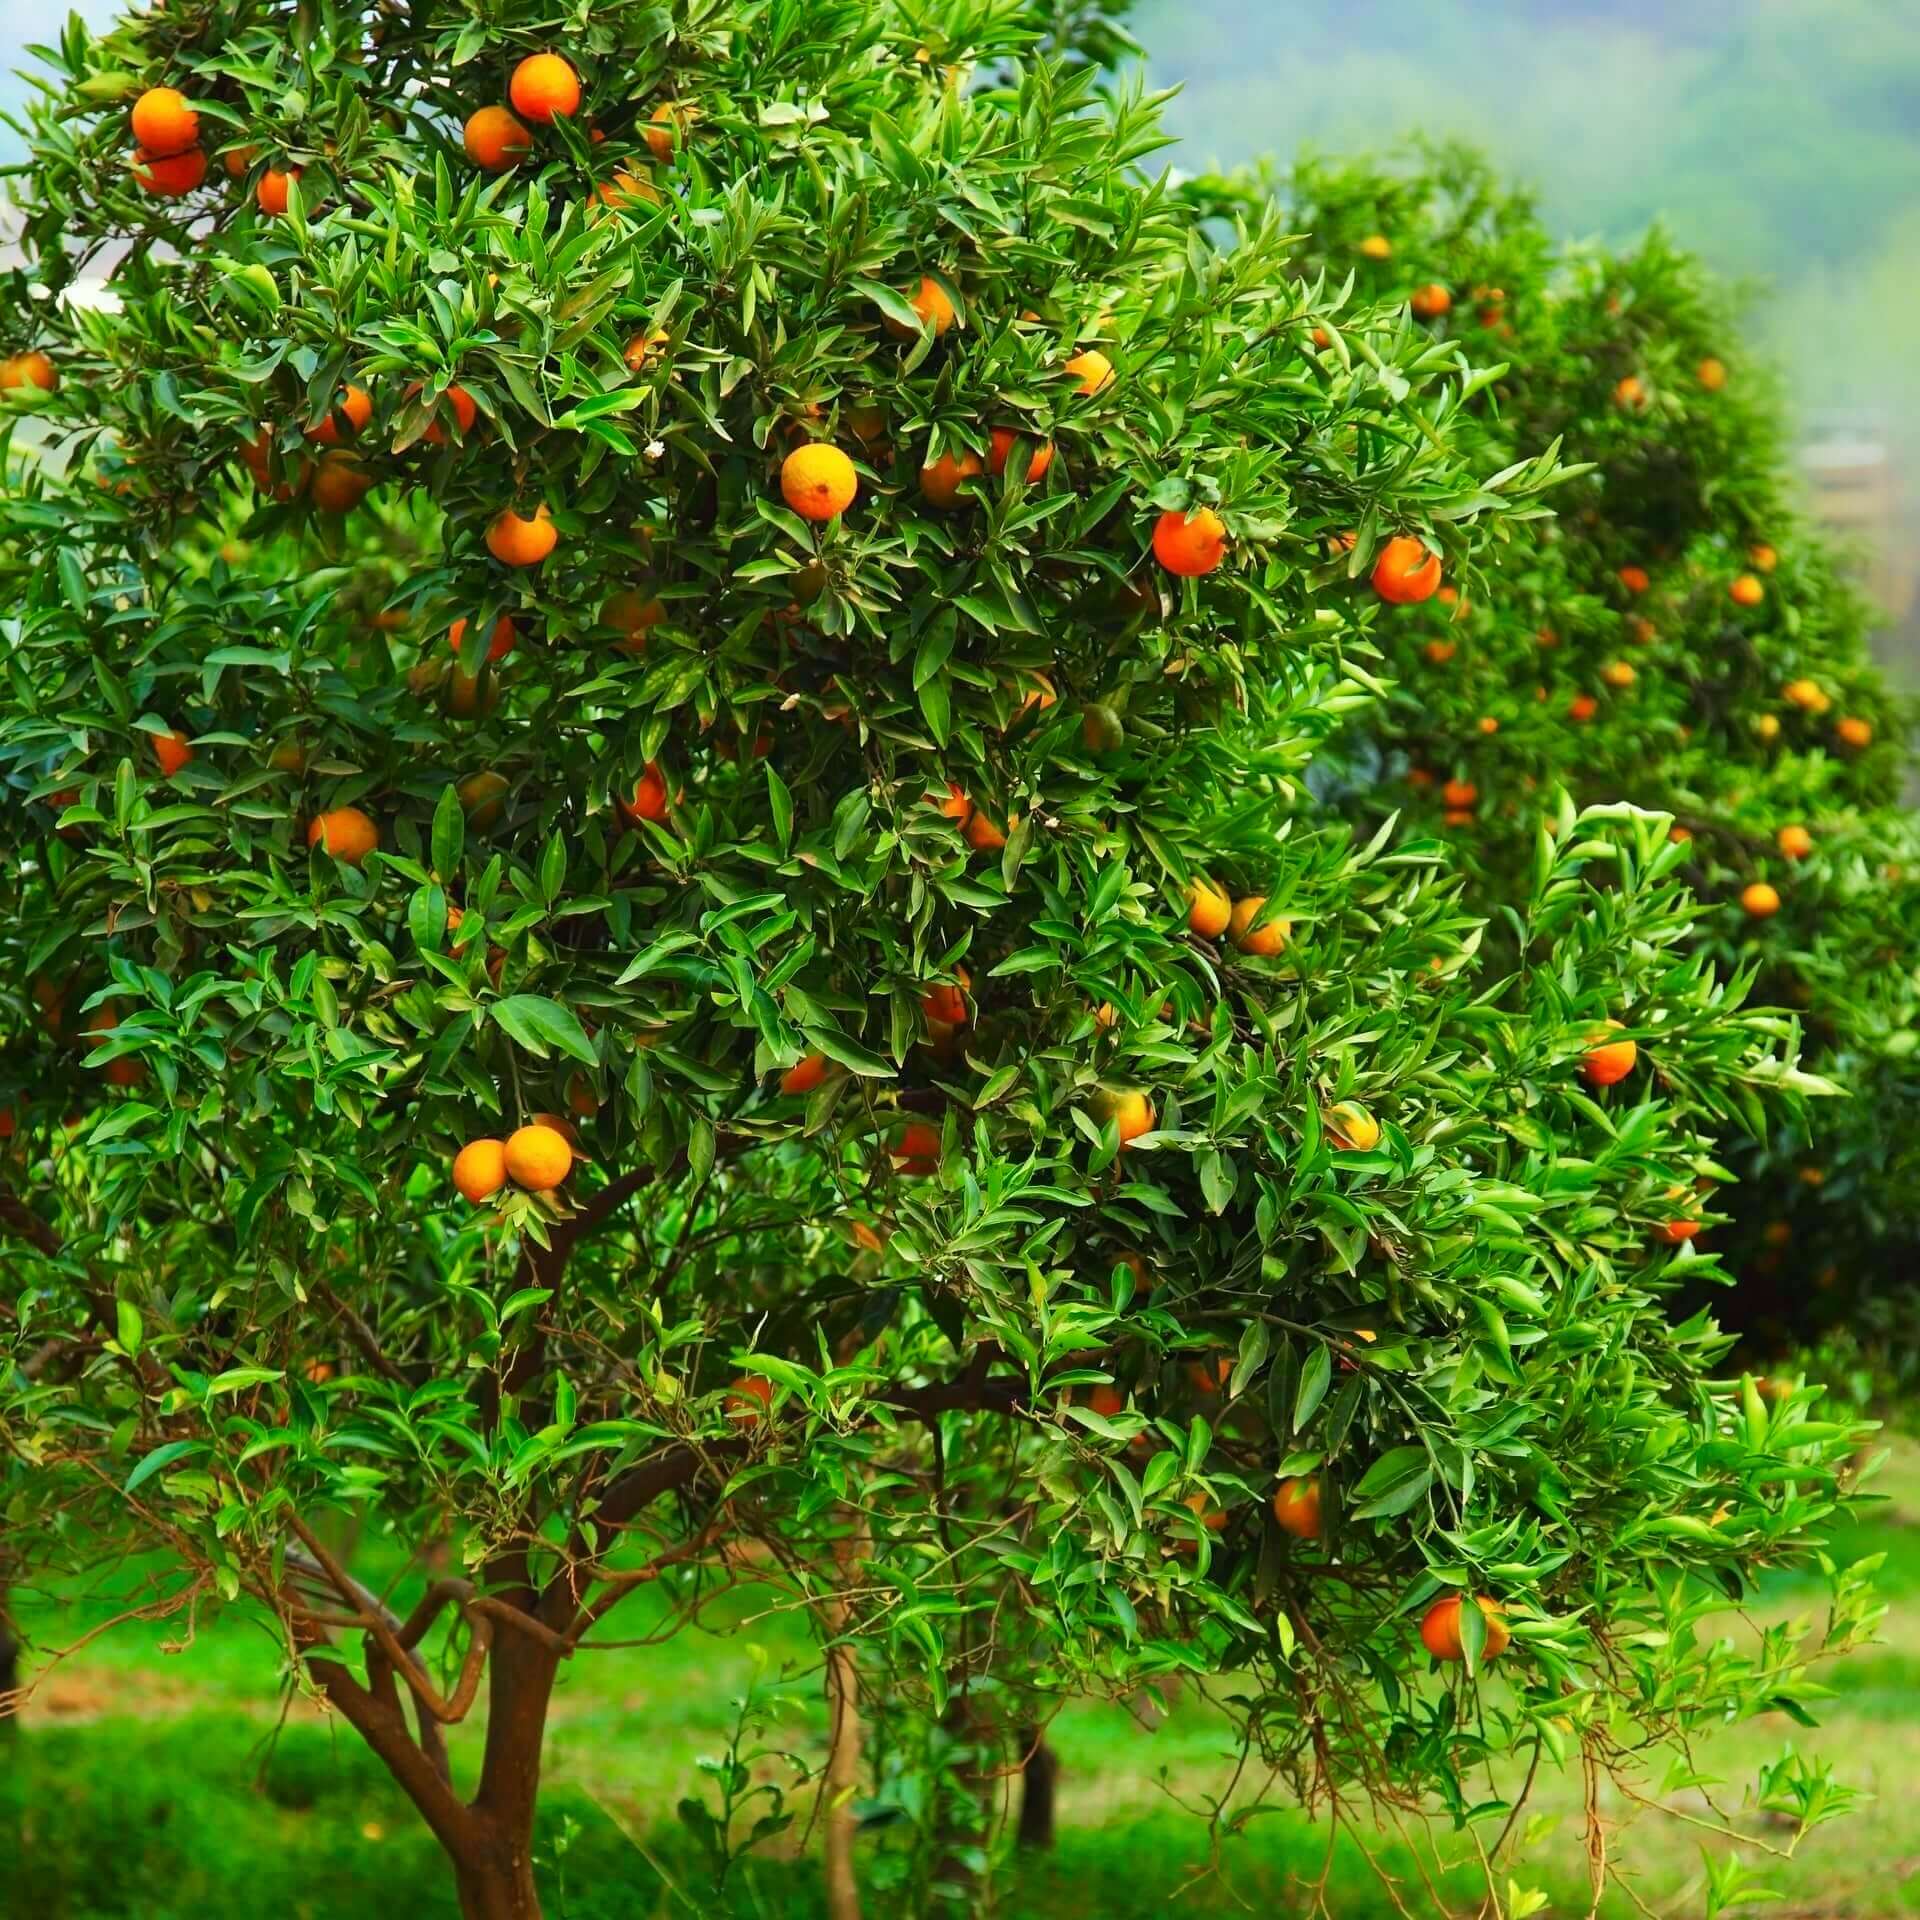 Clementine vs Mandarin - Healthier Steps